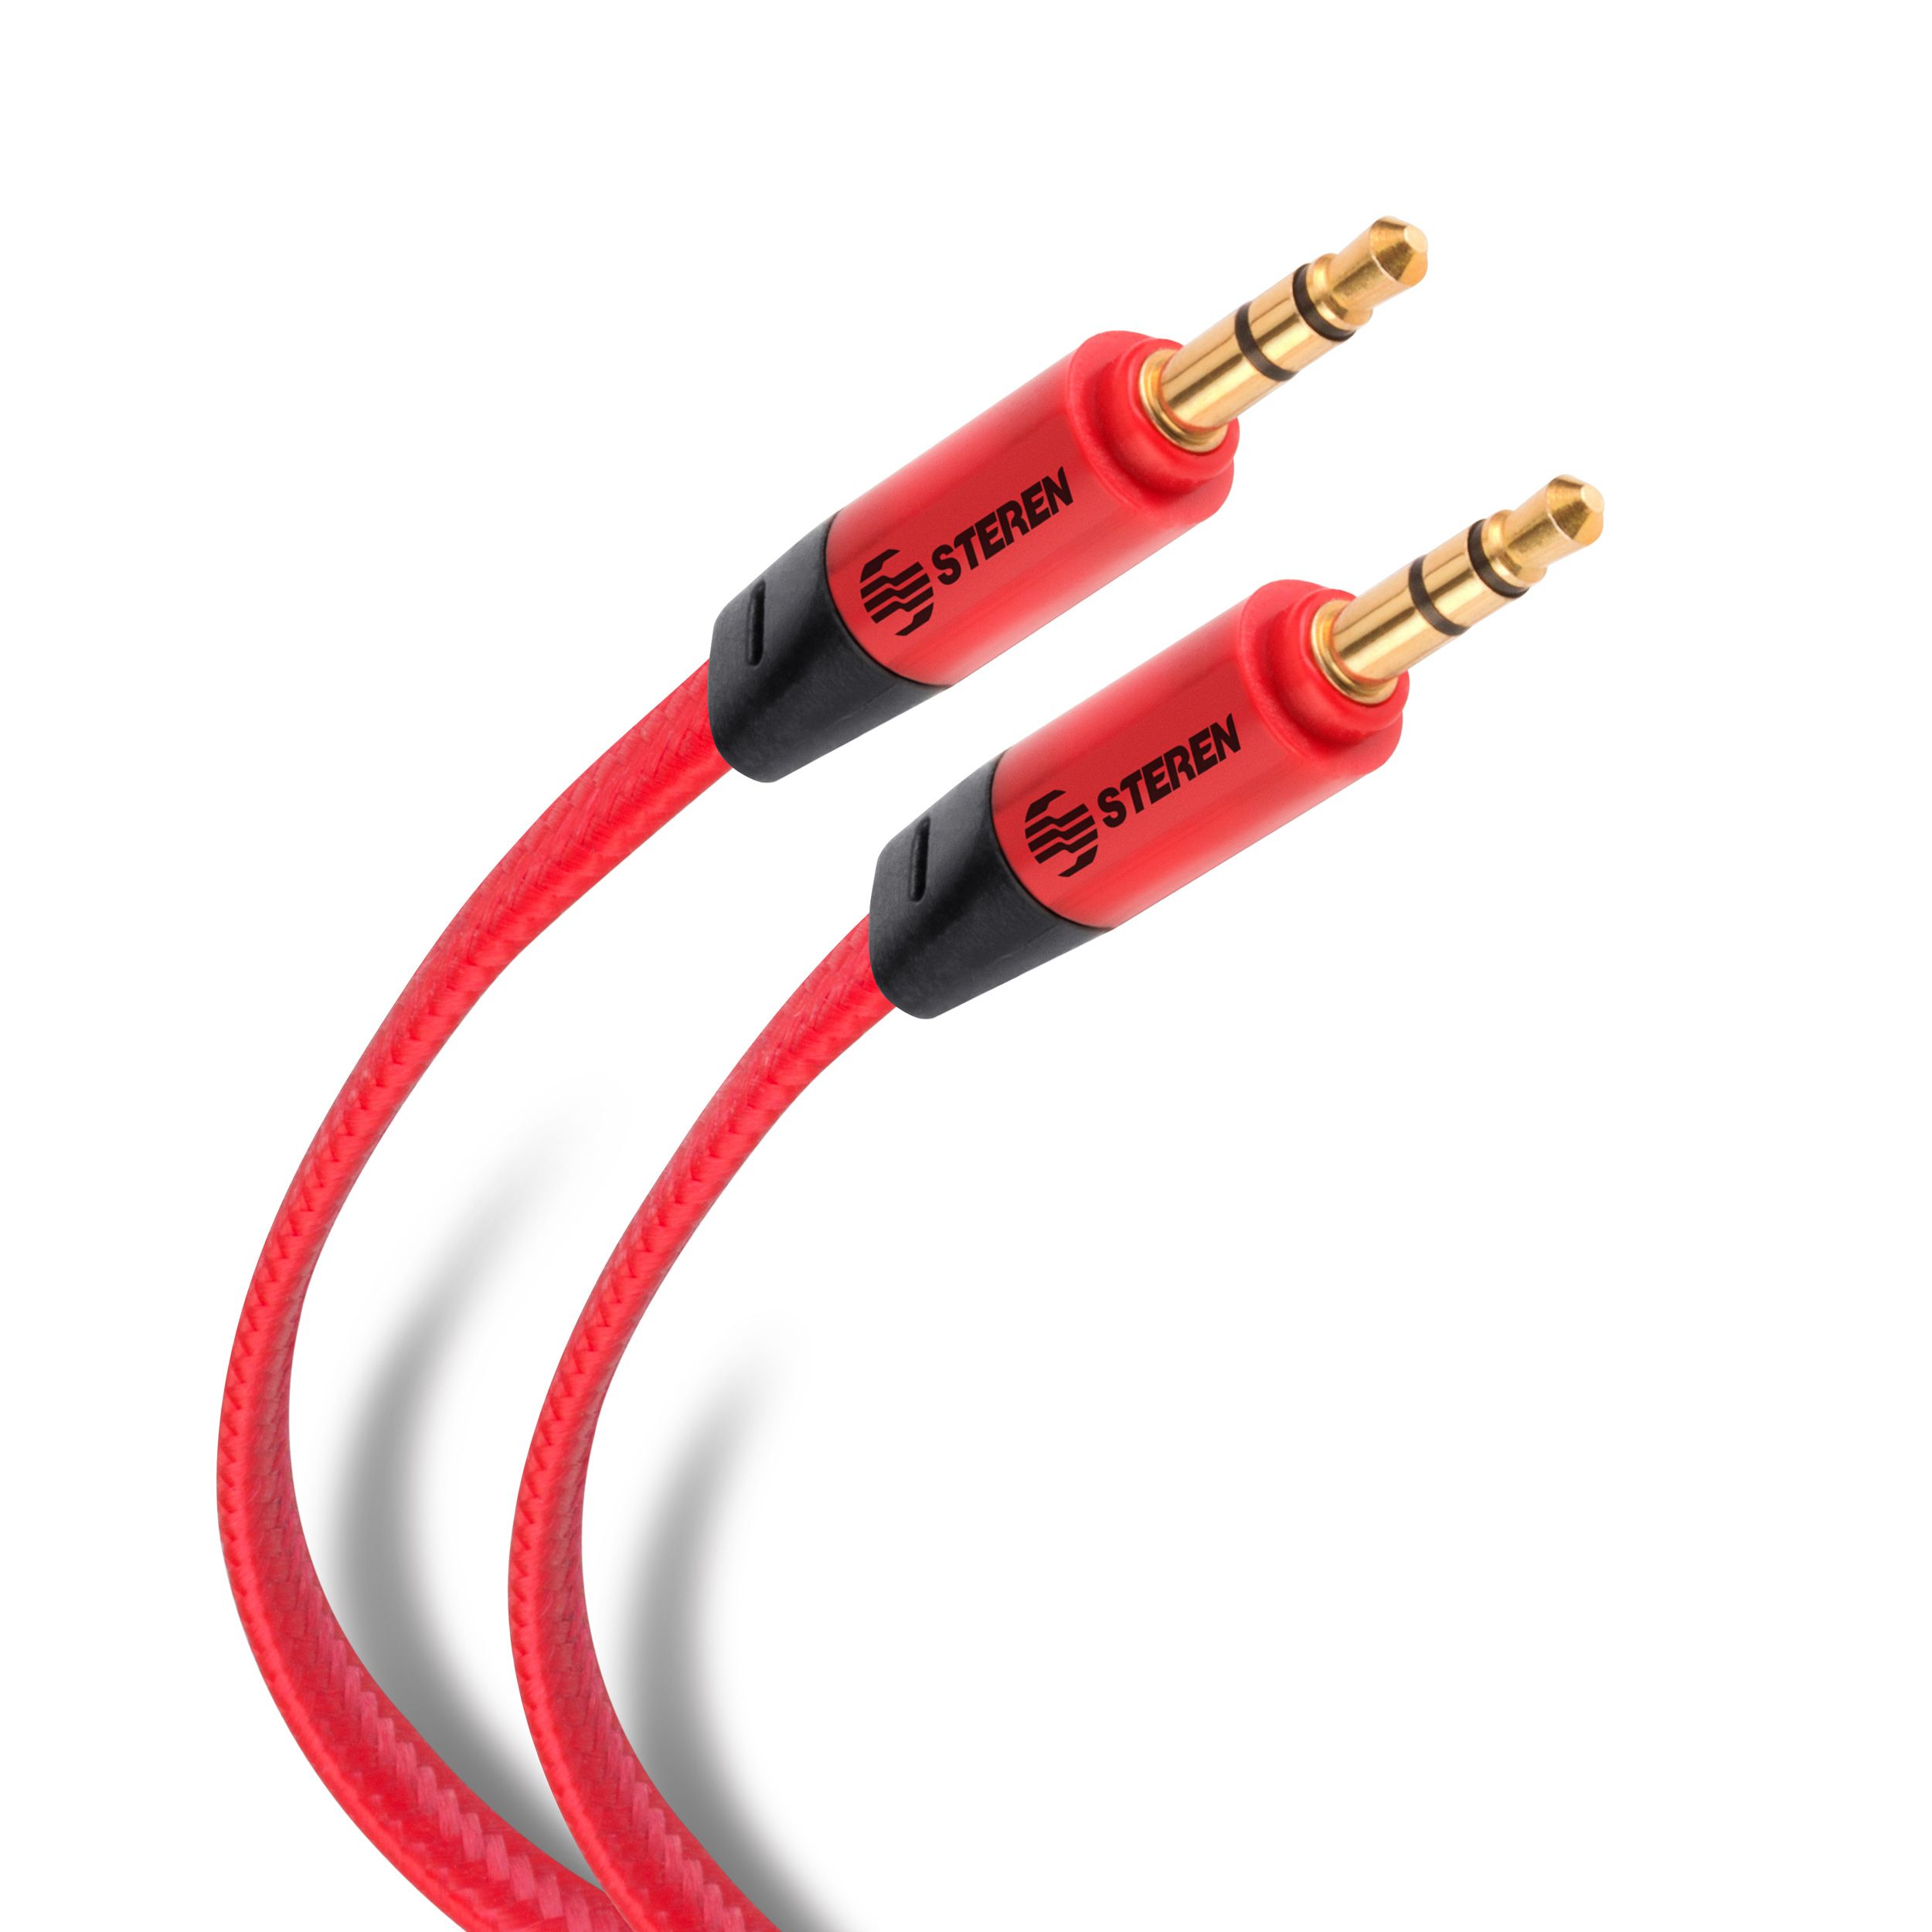 Cable auxiliar estéreo para coche con conector de 3,5 mm a 3,5 mm, cable  auxiliar para altavoz, cable de audio, cable auxiliar – Los mejores  productos en la tienda online Joom Geek